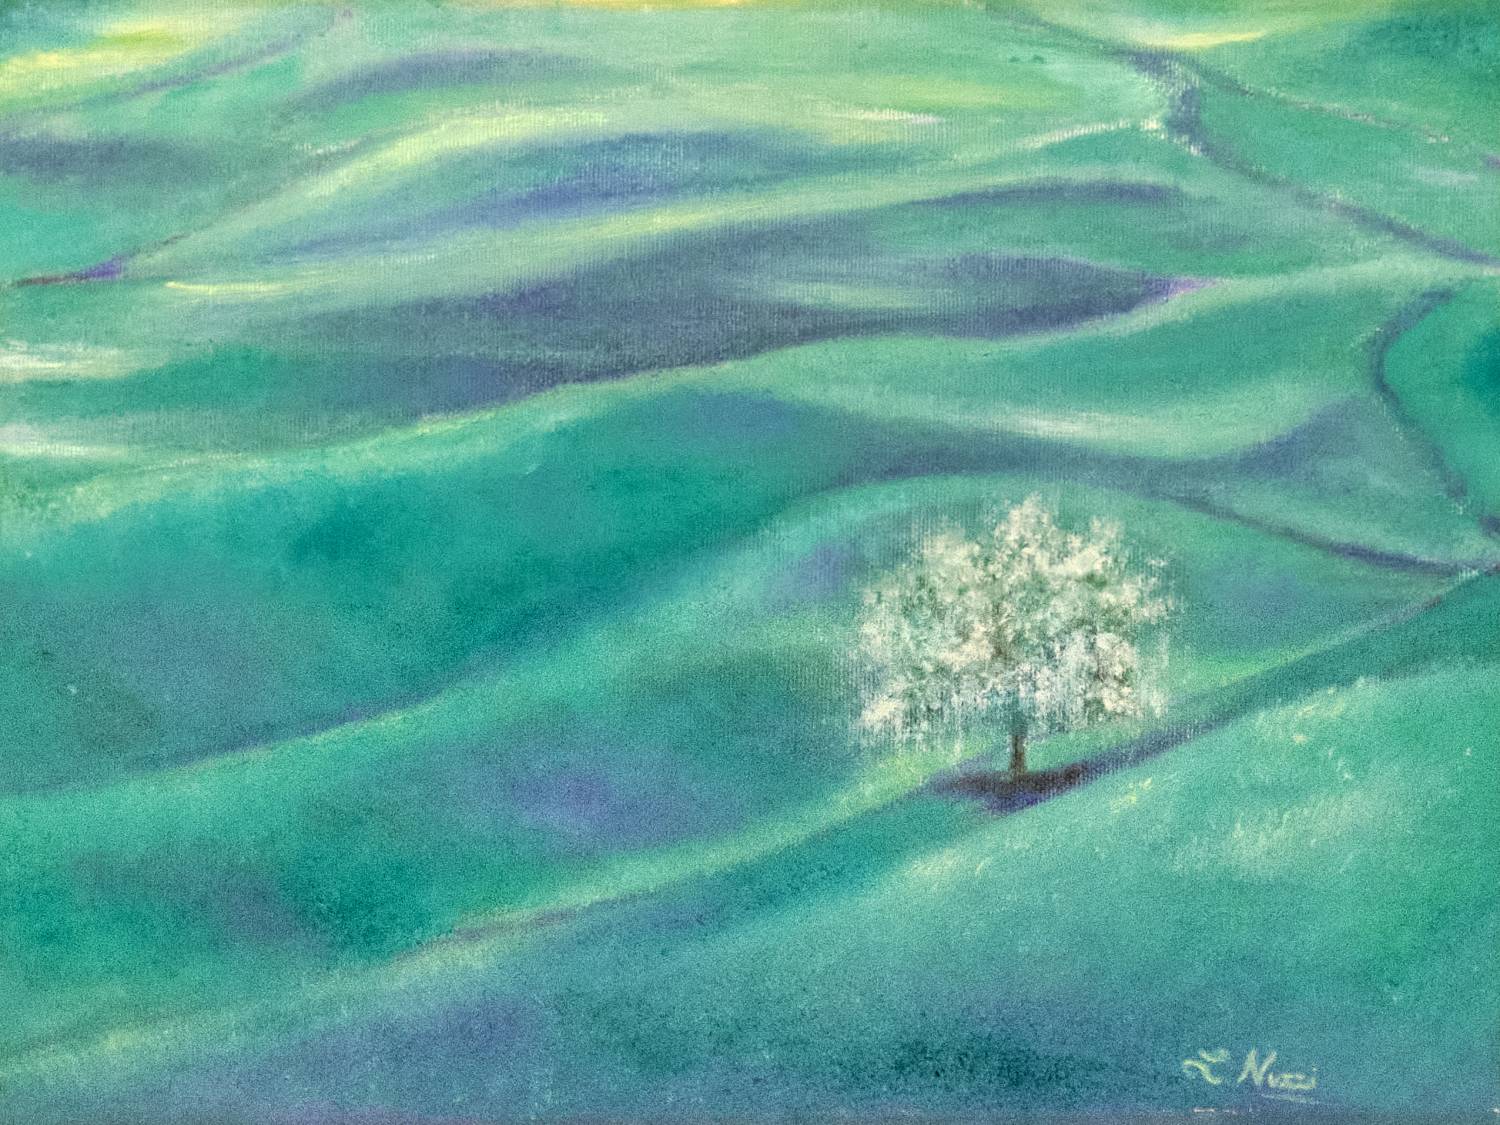 Vendita online opera di pittura ad olio dal titolo "Aria di primavera" realizzata dall'artista contemporanea Linda Nuzzi